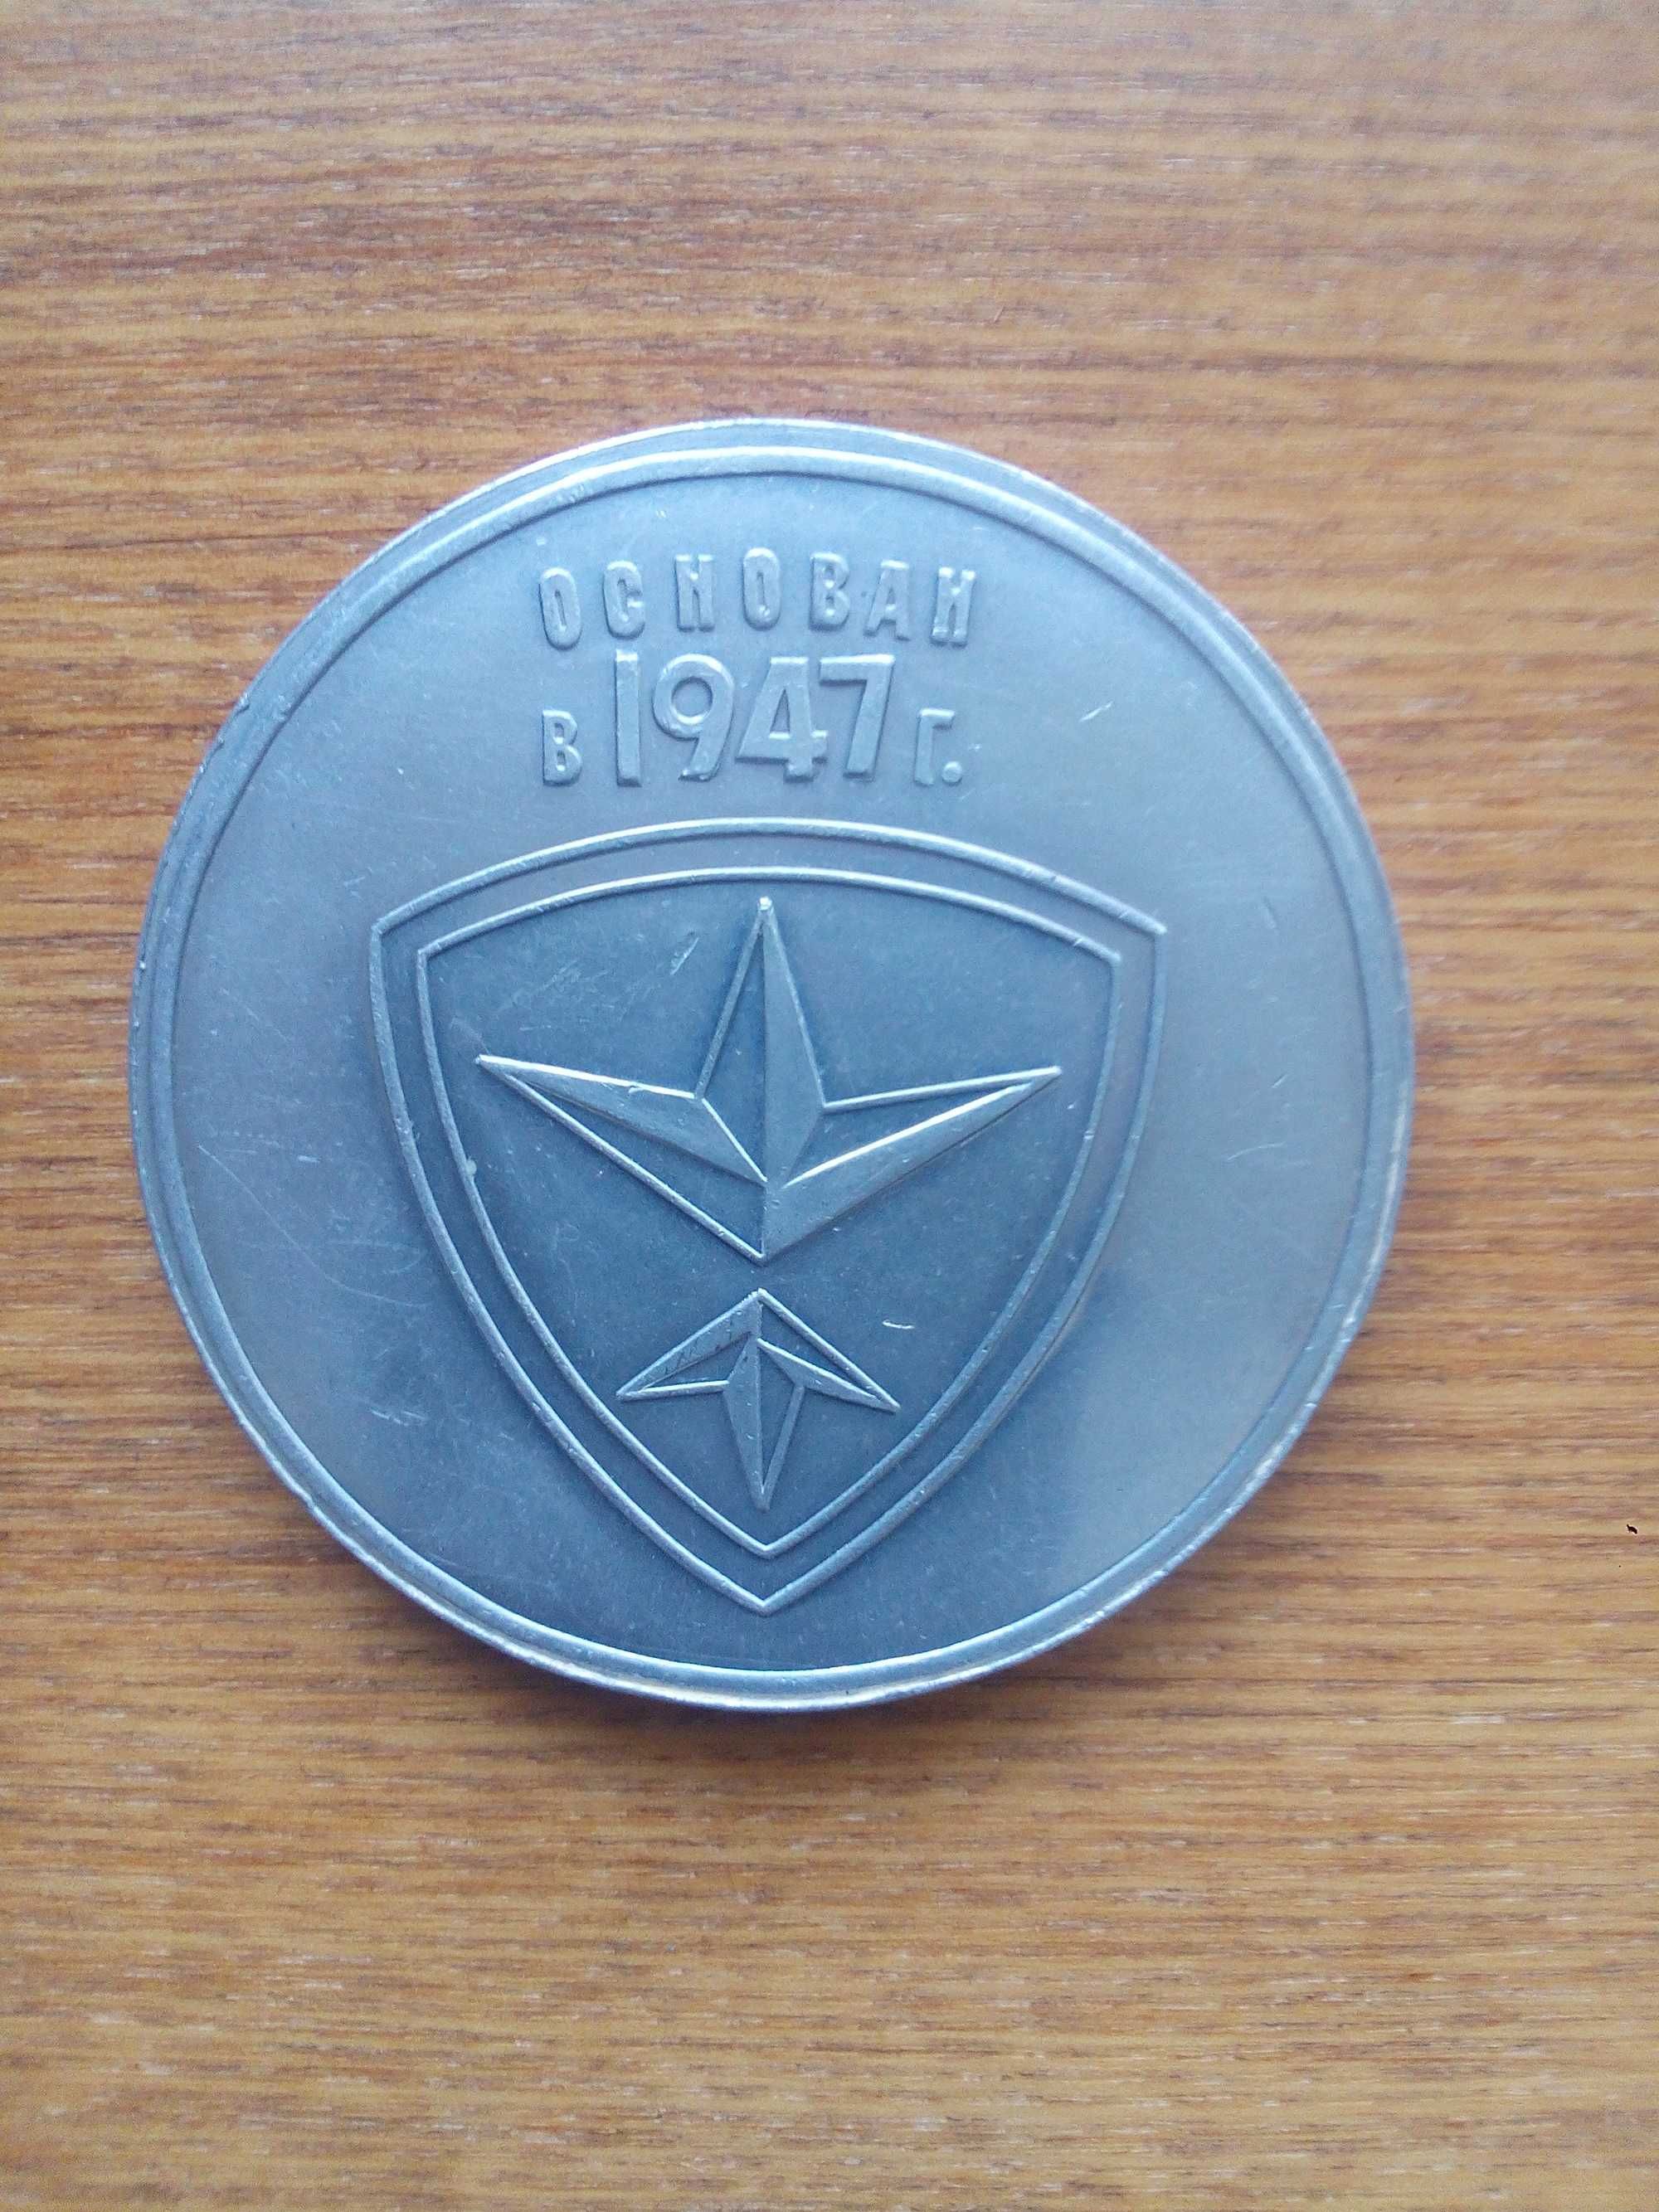 Продам настольную медаль из титана, запорожский трансформаторный завод